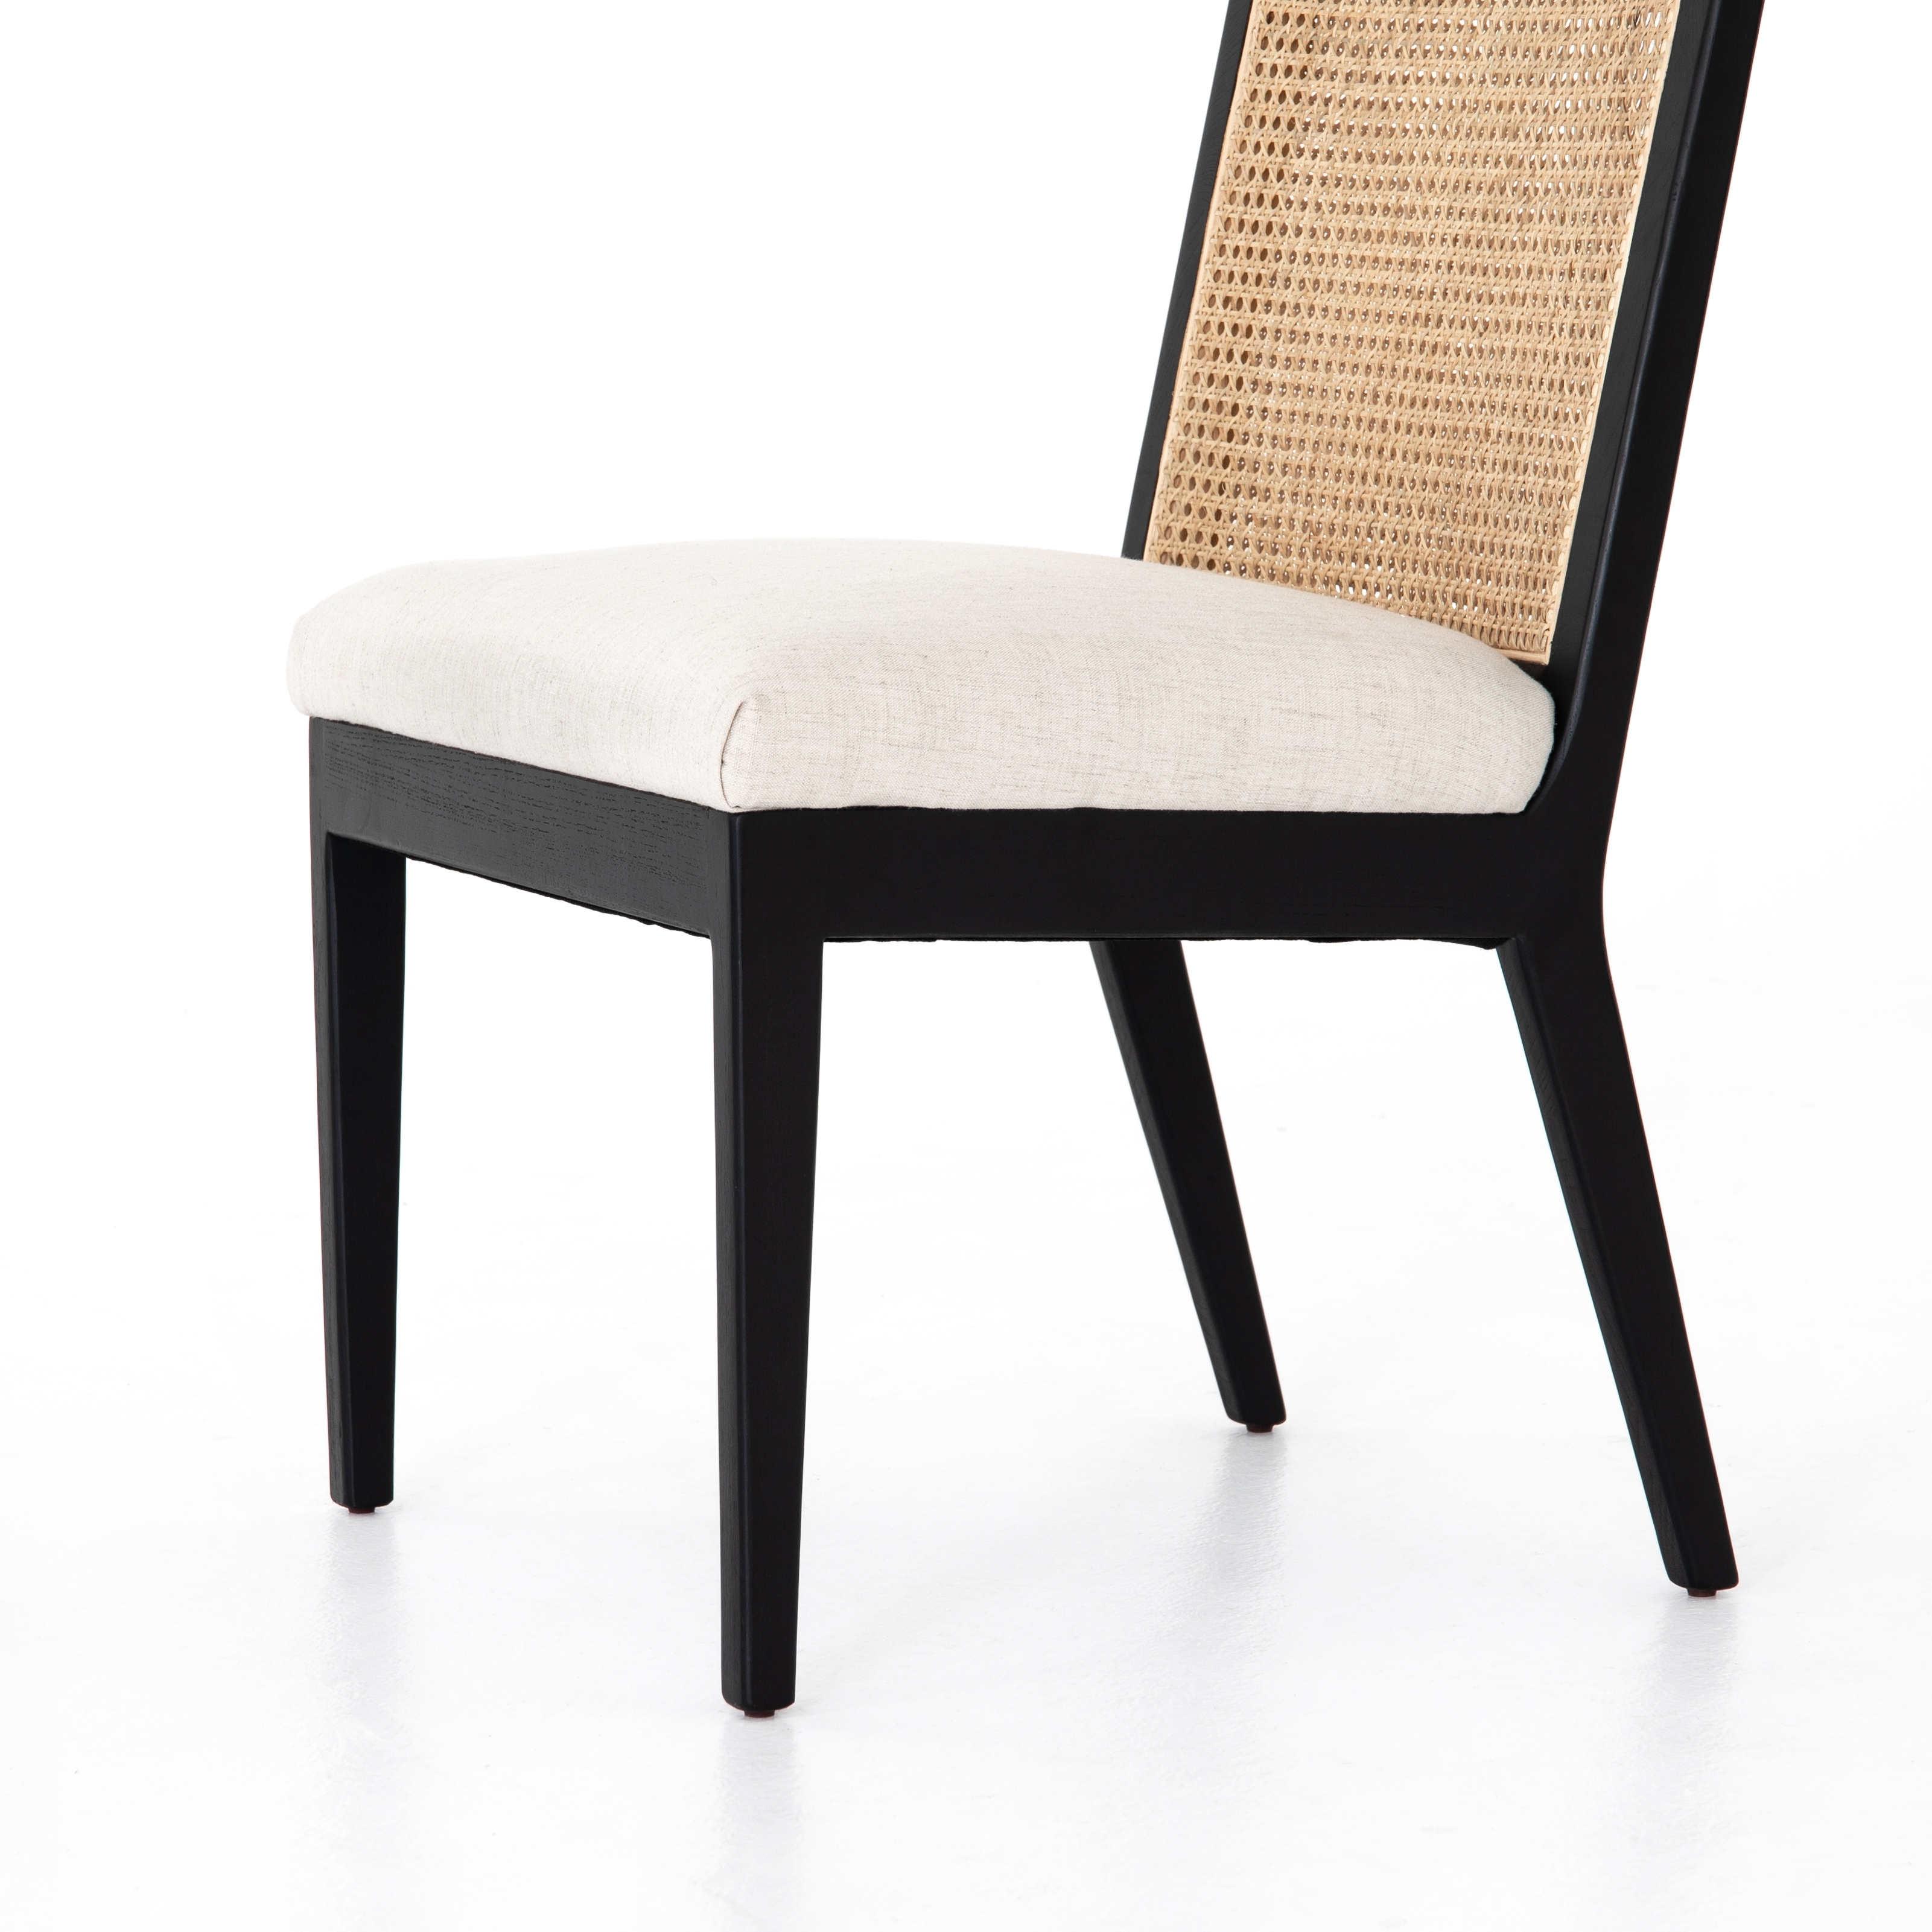 Antonia Armless Dining Chair-Savile Flax - Image 2